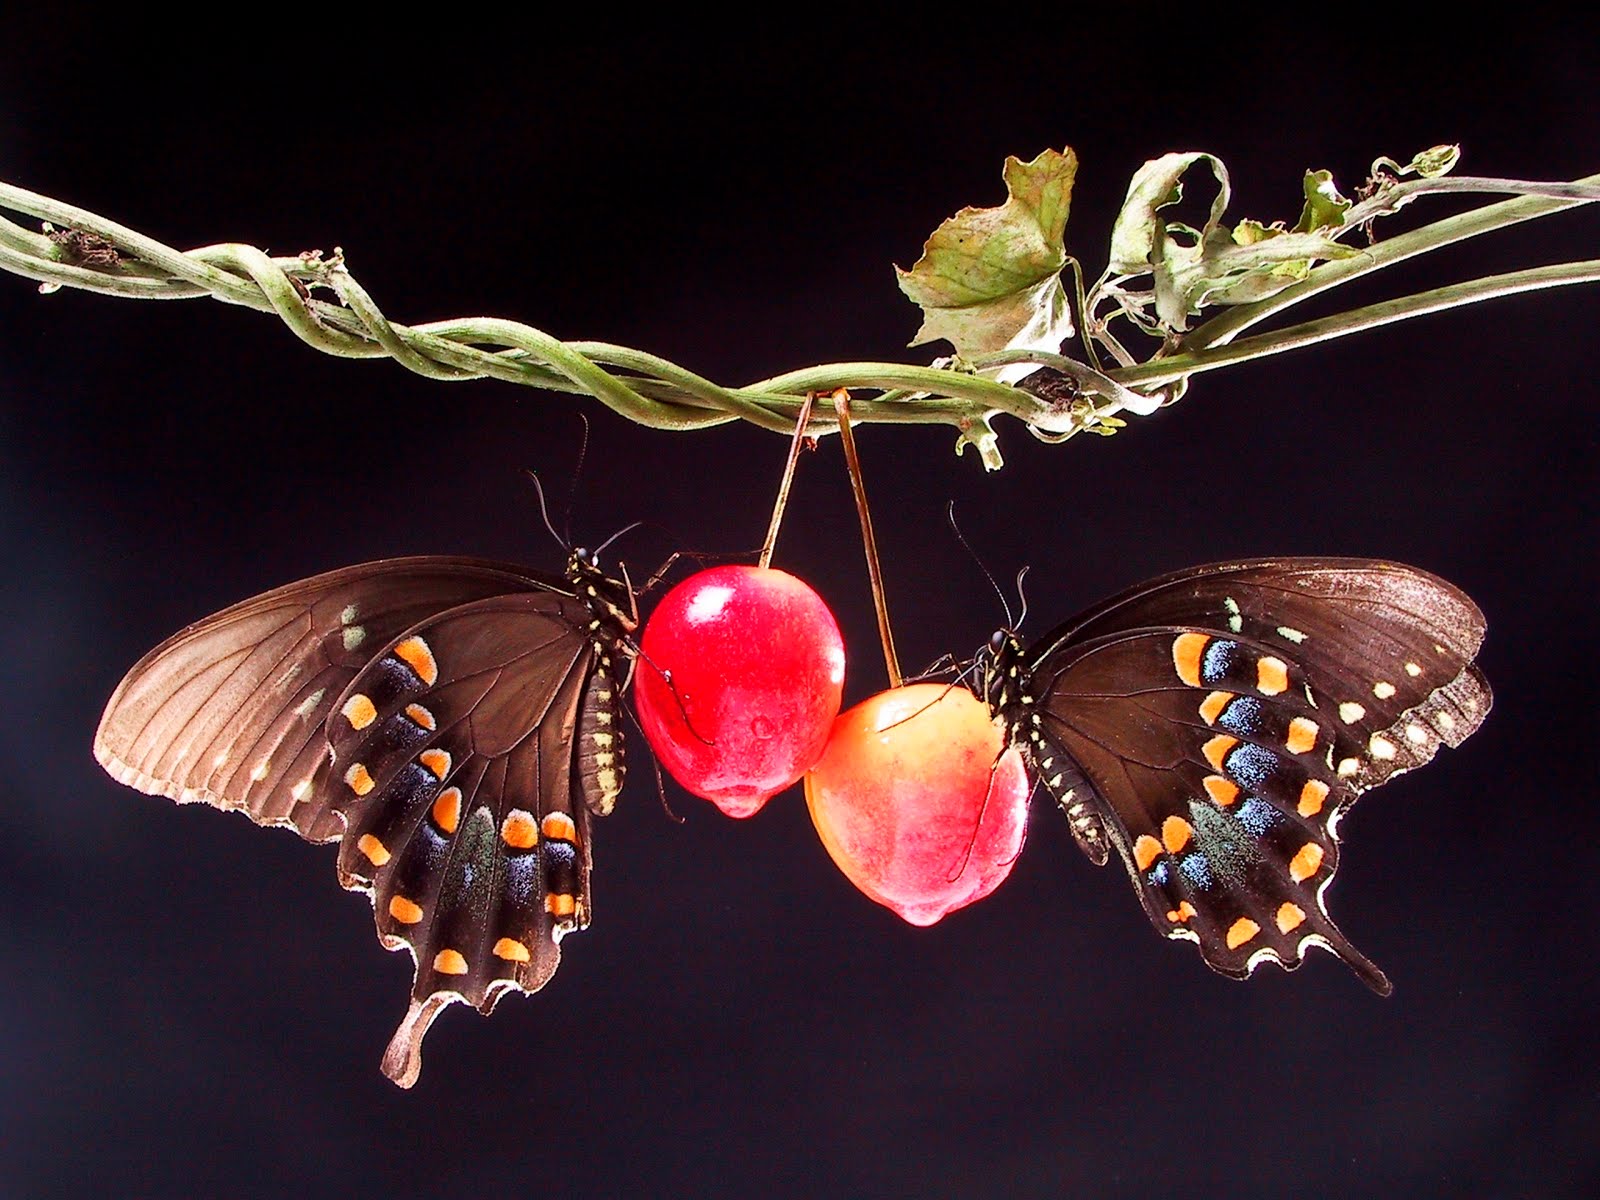 Two Butterflies in Love Wallpaper